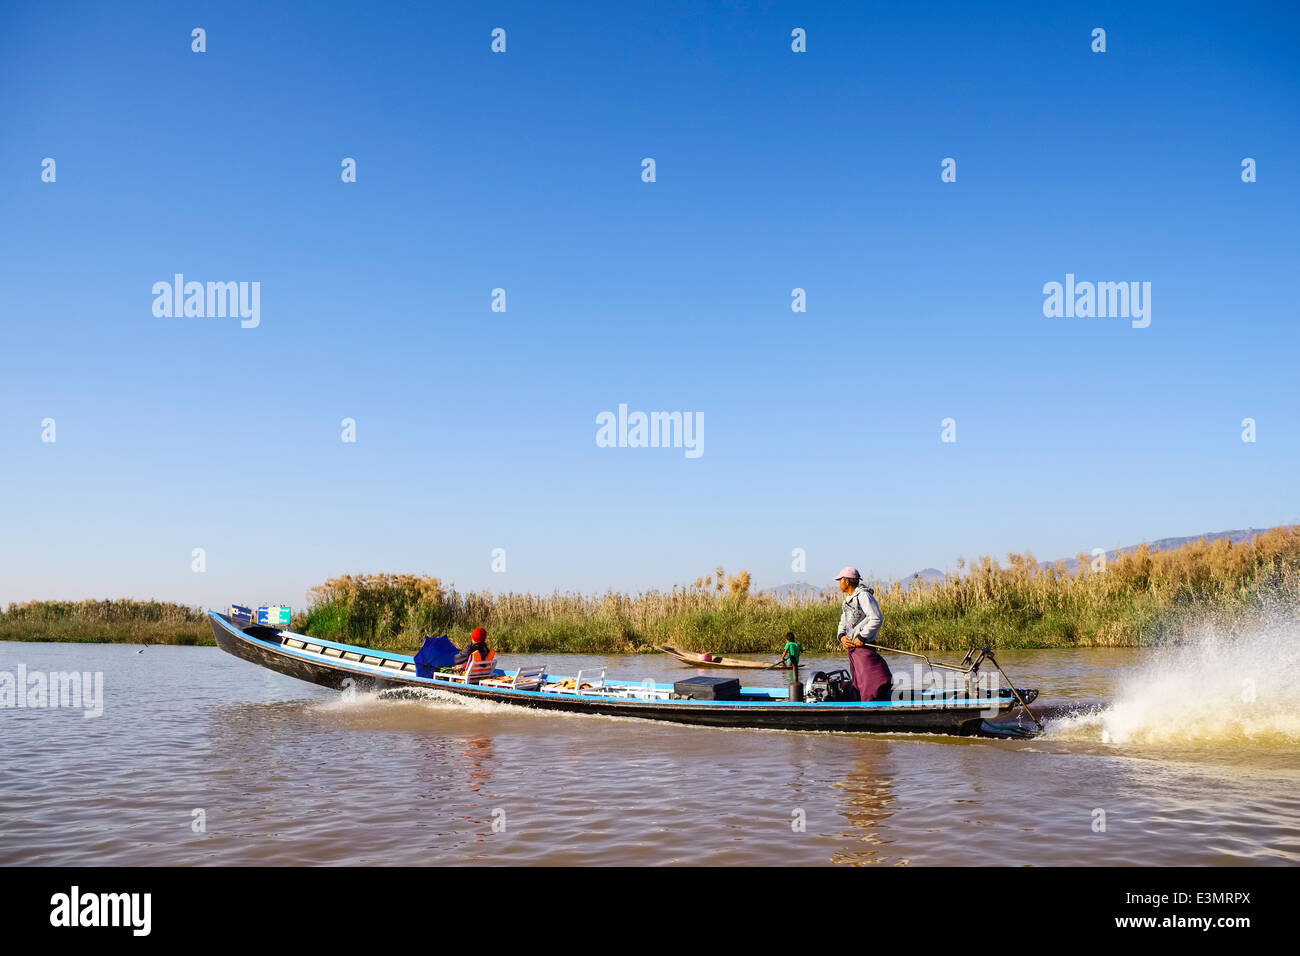 Longboat on Inle Lake, Myanmar, Asia Stock Photo